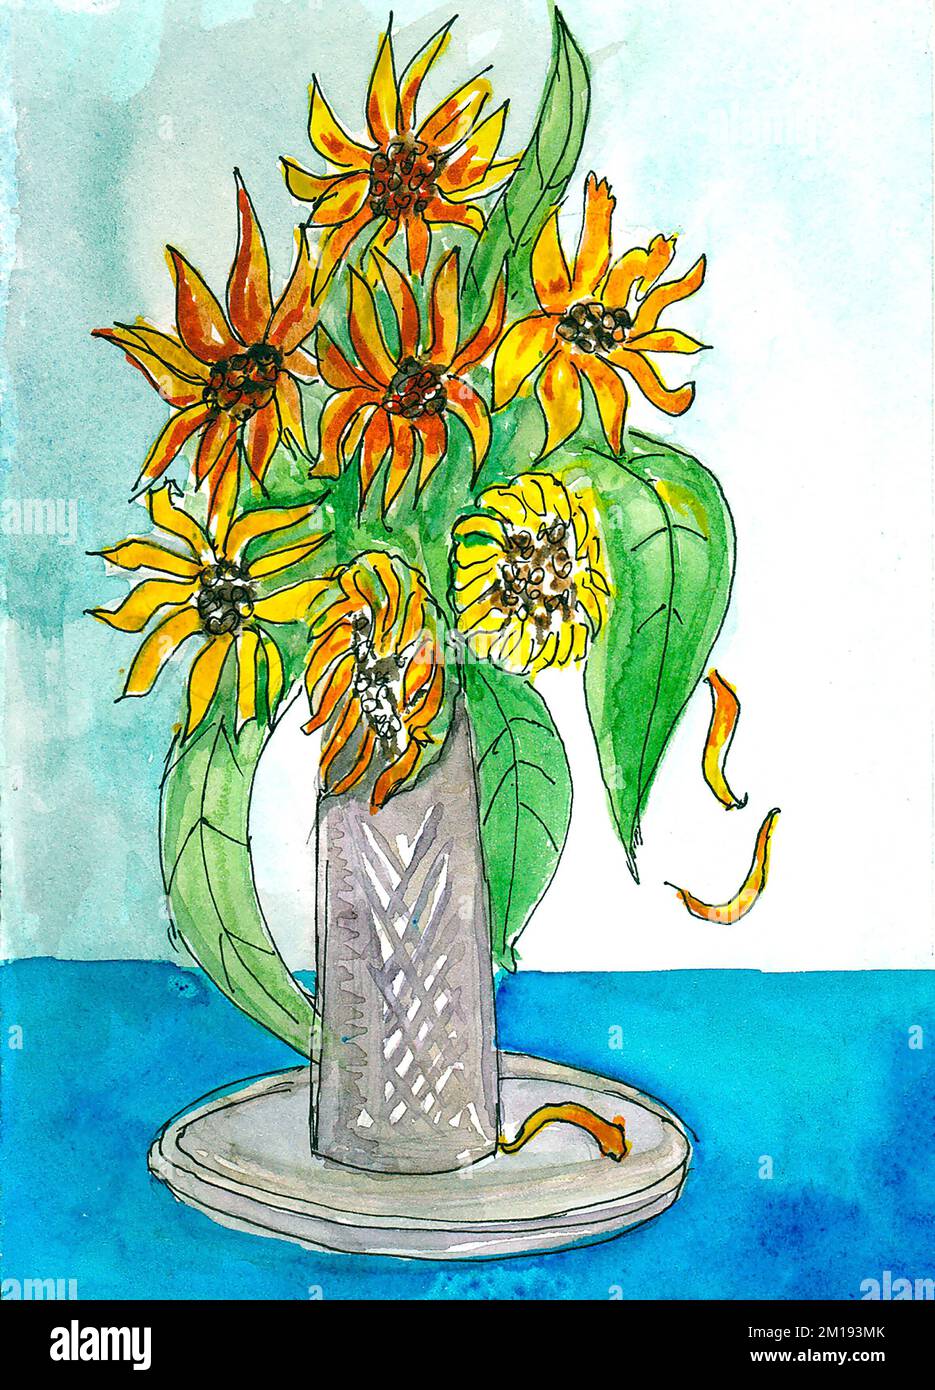 Un bouquet de fleurs jaunes dans un vase est peint en aquarelle. Fleur de l'artichaut de Jérusalem et de rudbeckia. Illustration. Peinture conception faite à la main. Dessiné à la main Banque D'Images